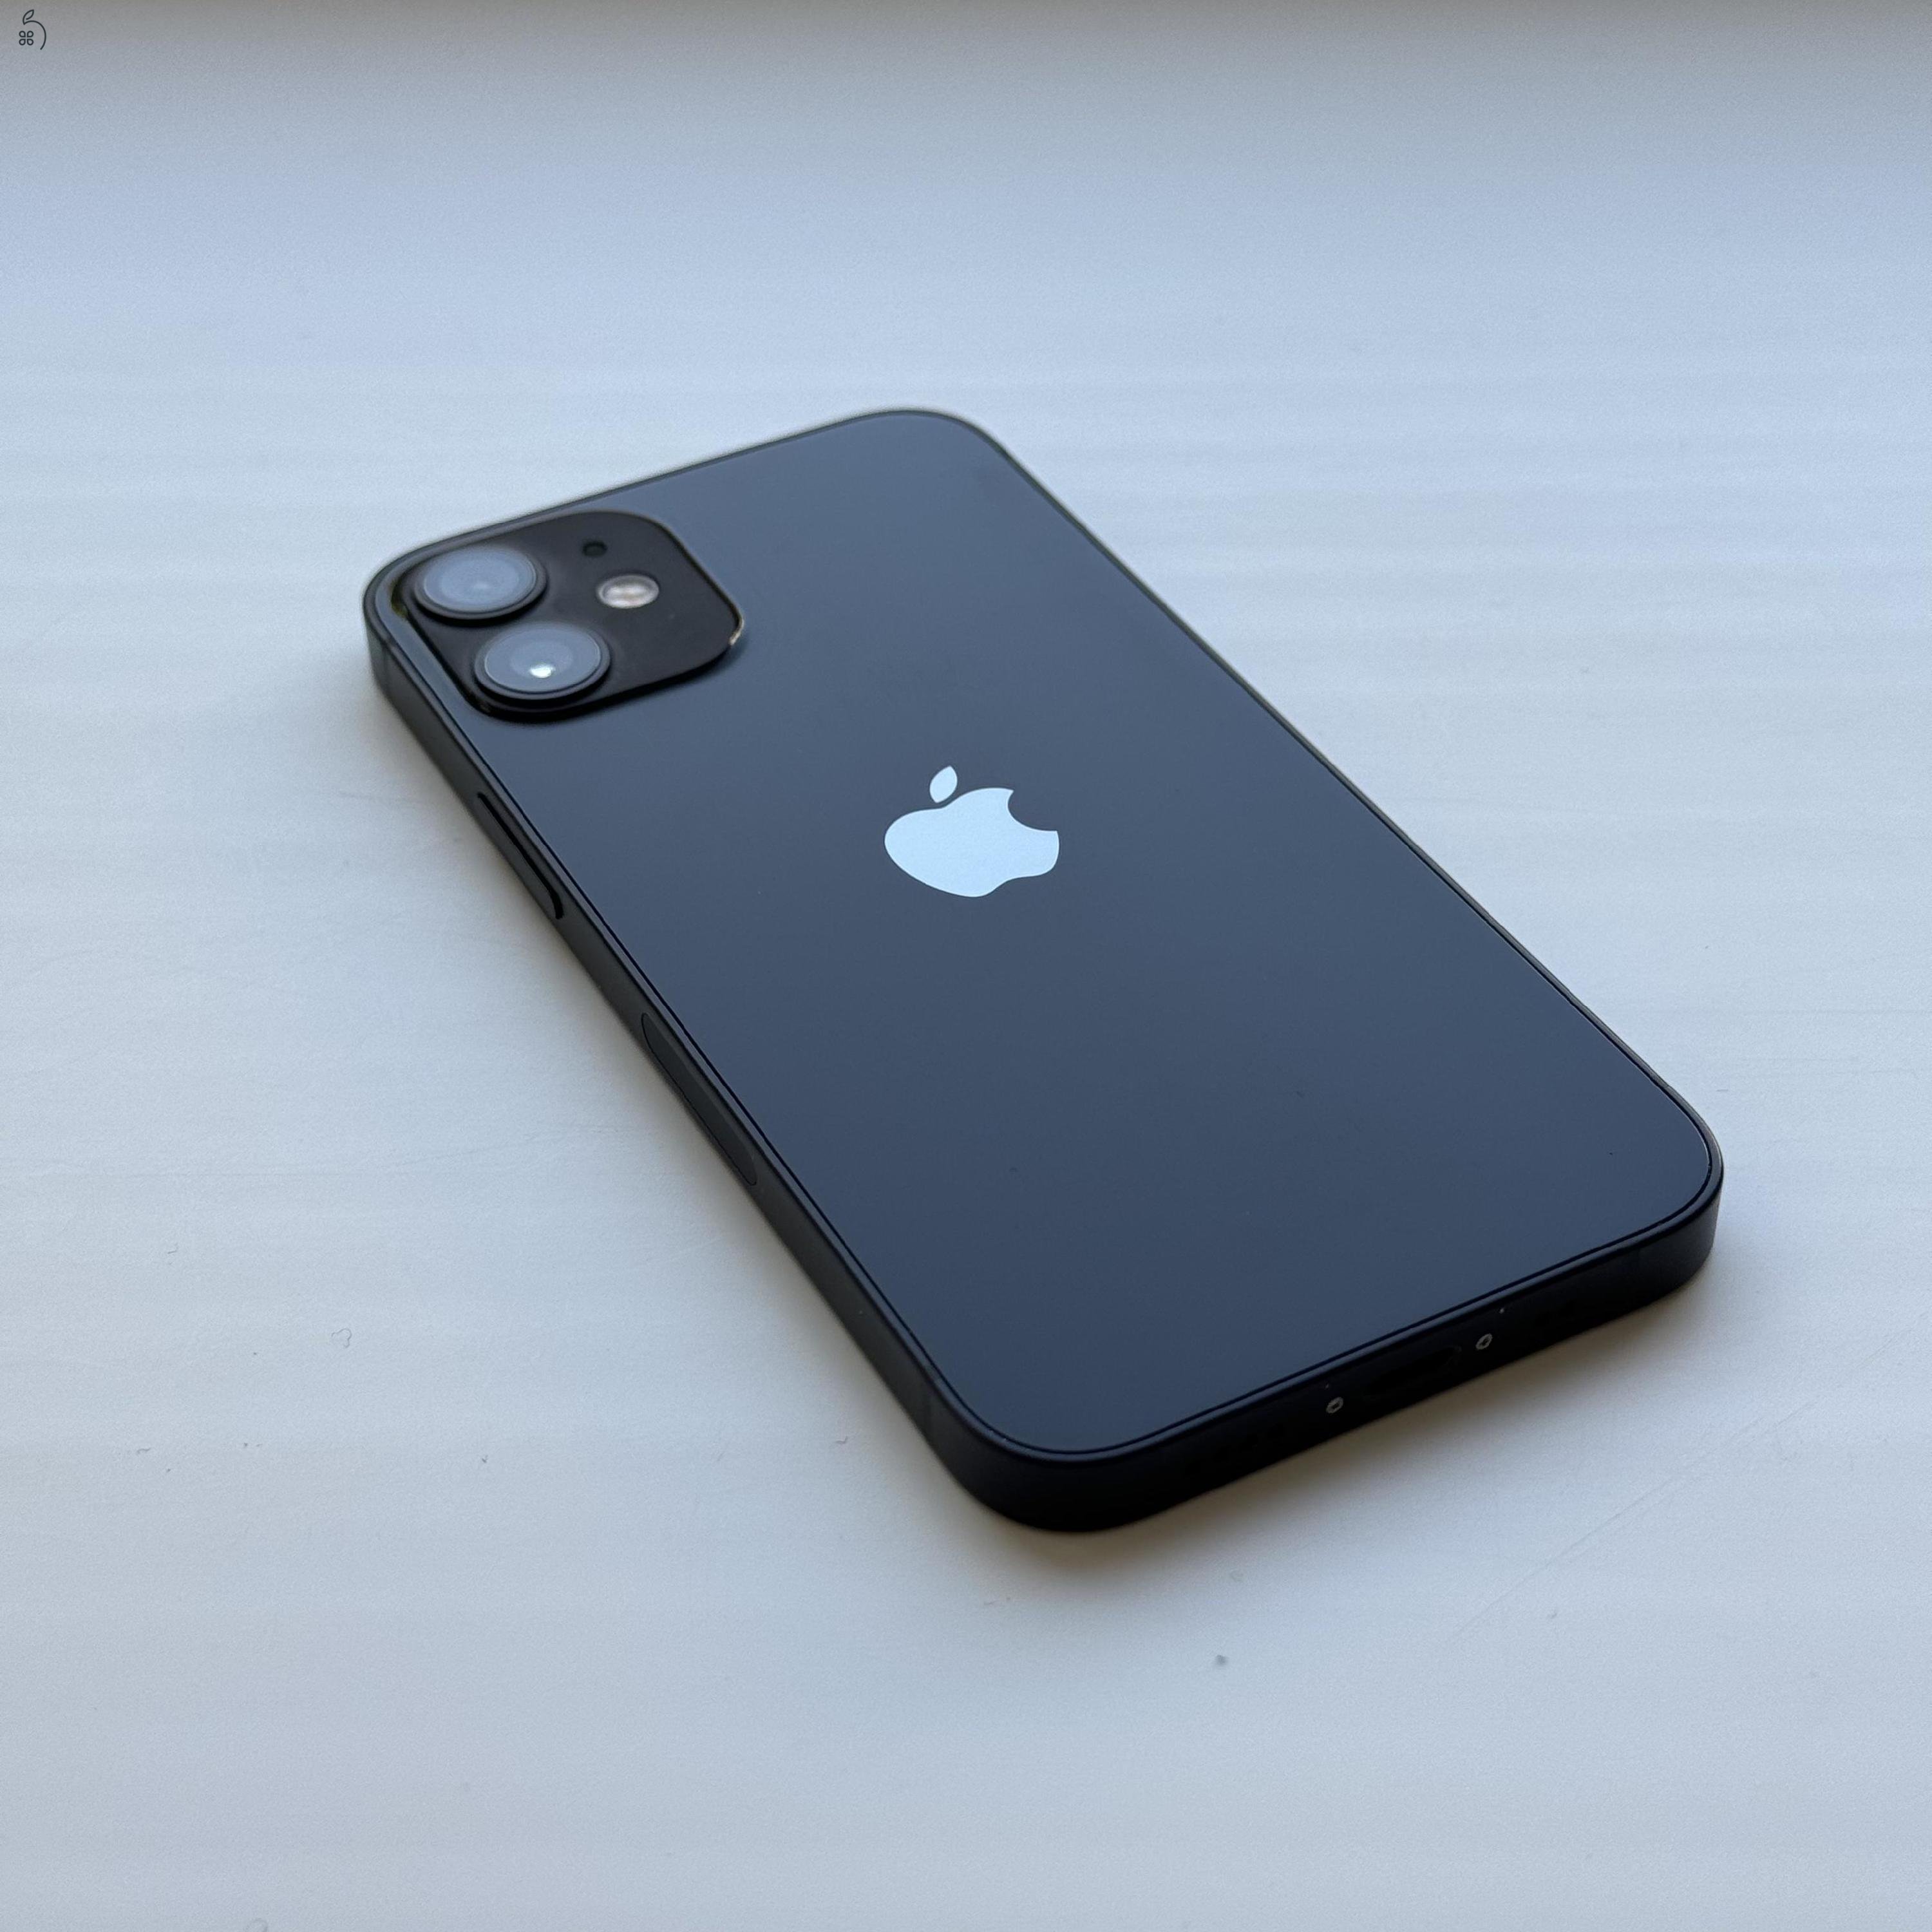 GYÖNYÖRŰ iPhone 12 mini 64GB Black - Kártyfüggetlen, 1 ÉV GARANCIA, 84% Akkumulátor